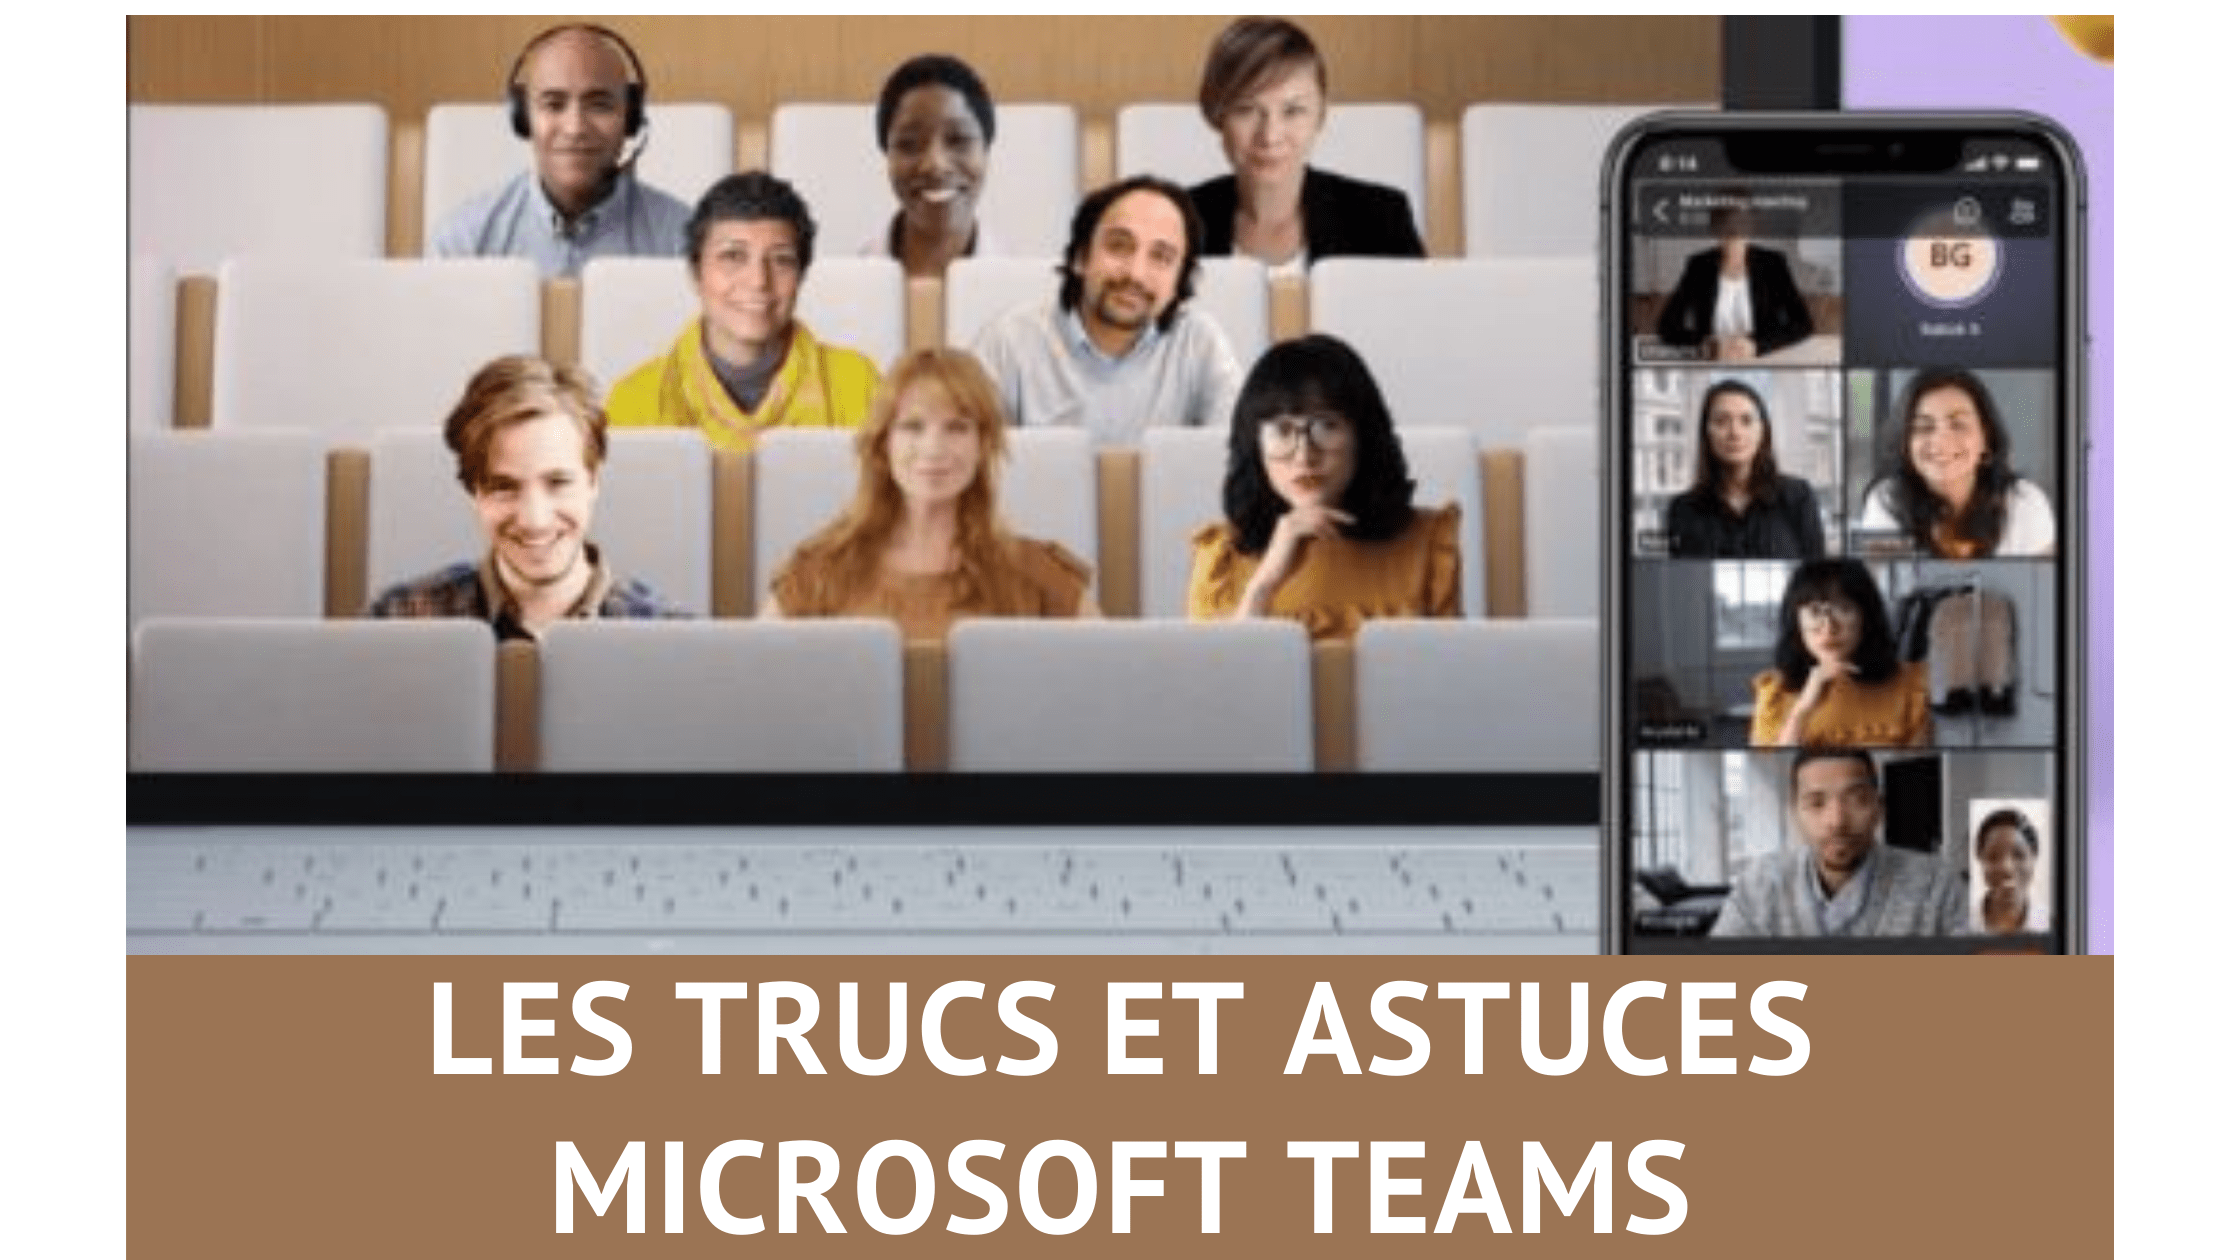 Les trucs et astuces pour Microsoft Teams, découvrez 33 fonctions méconnues de Teams ! 4